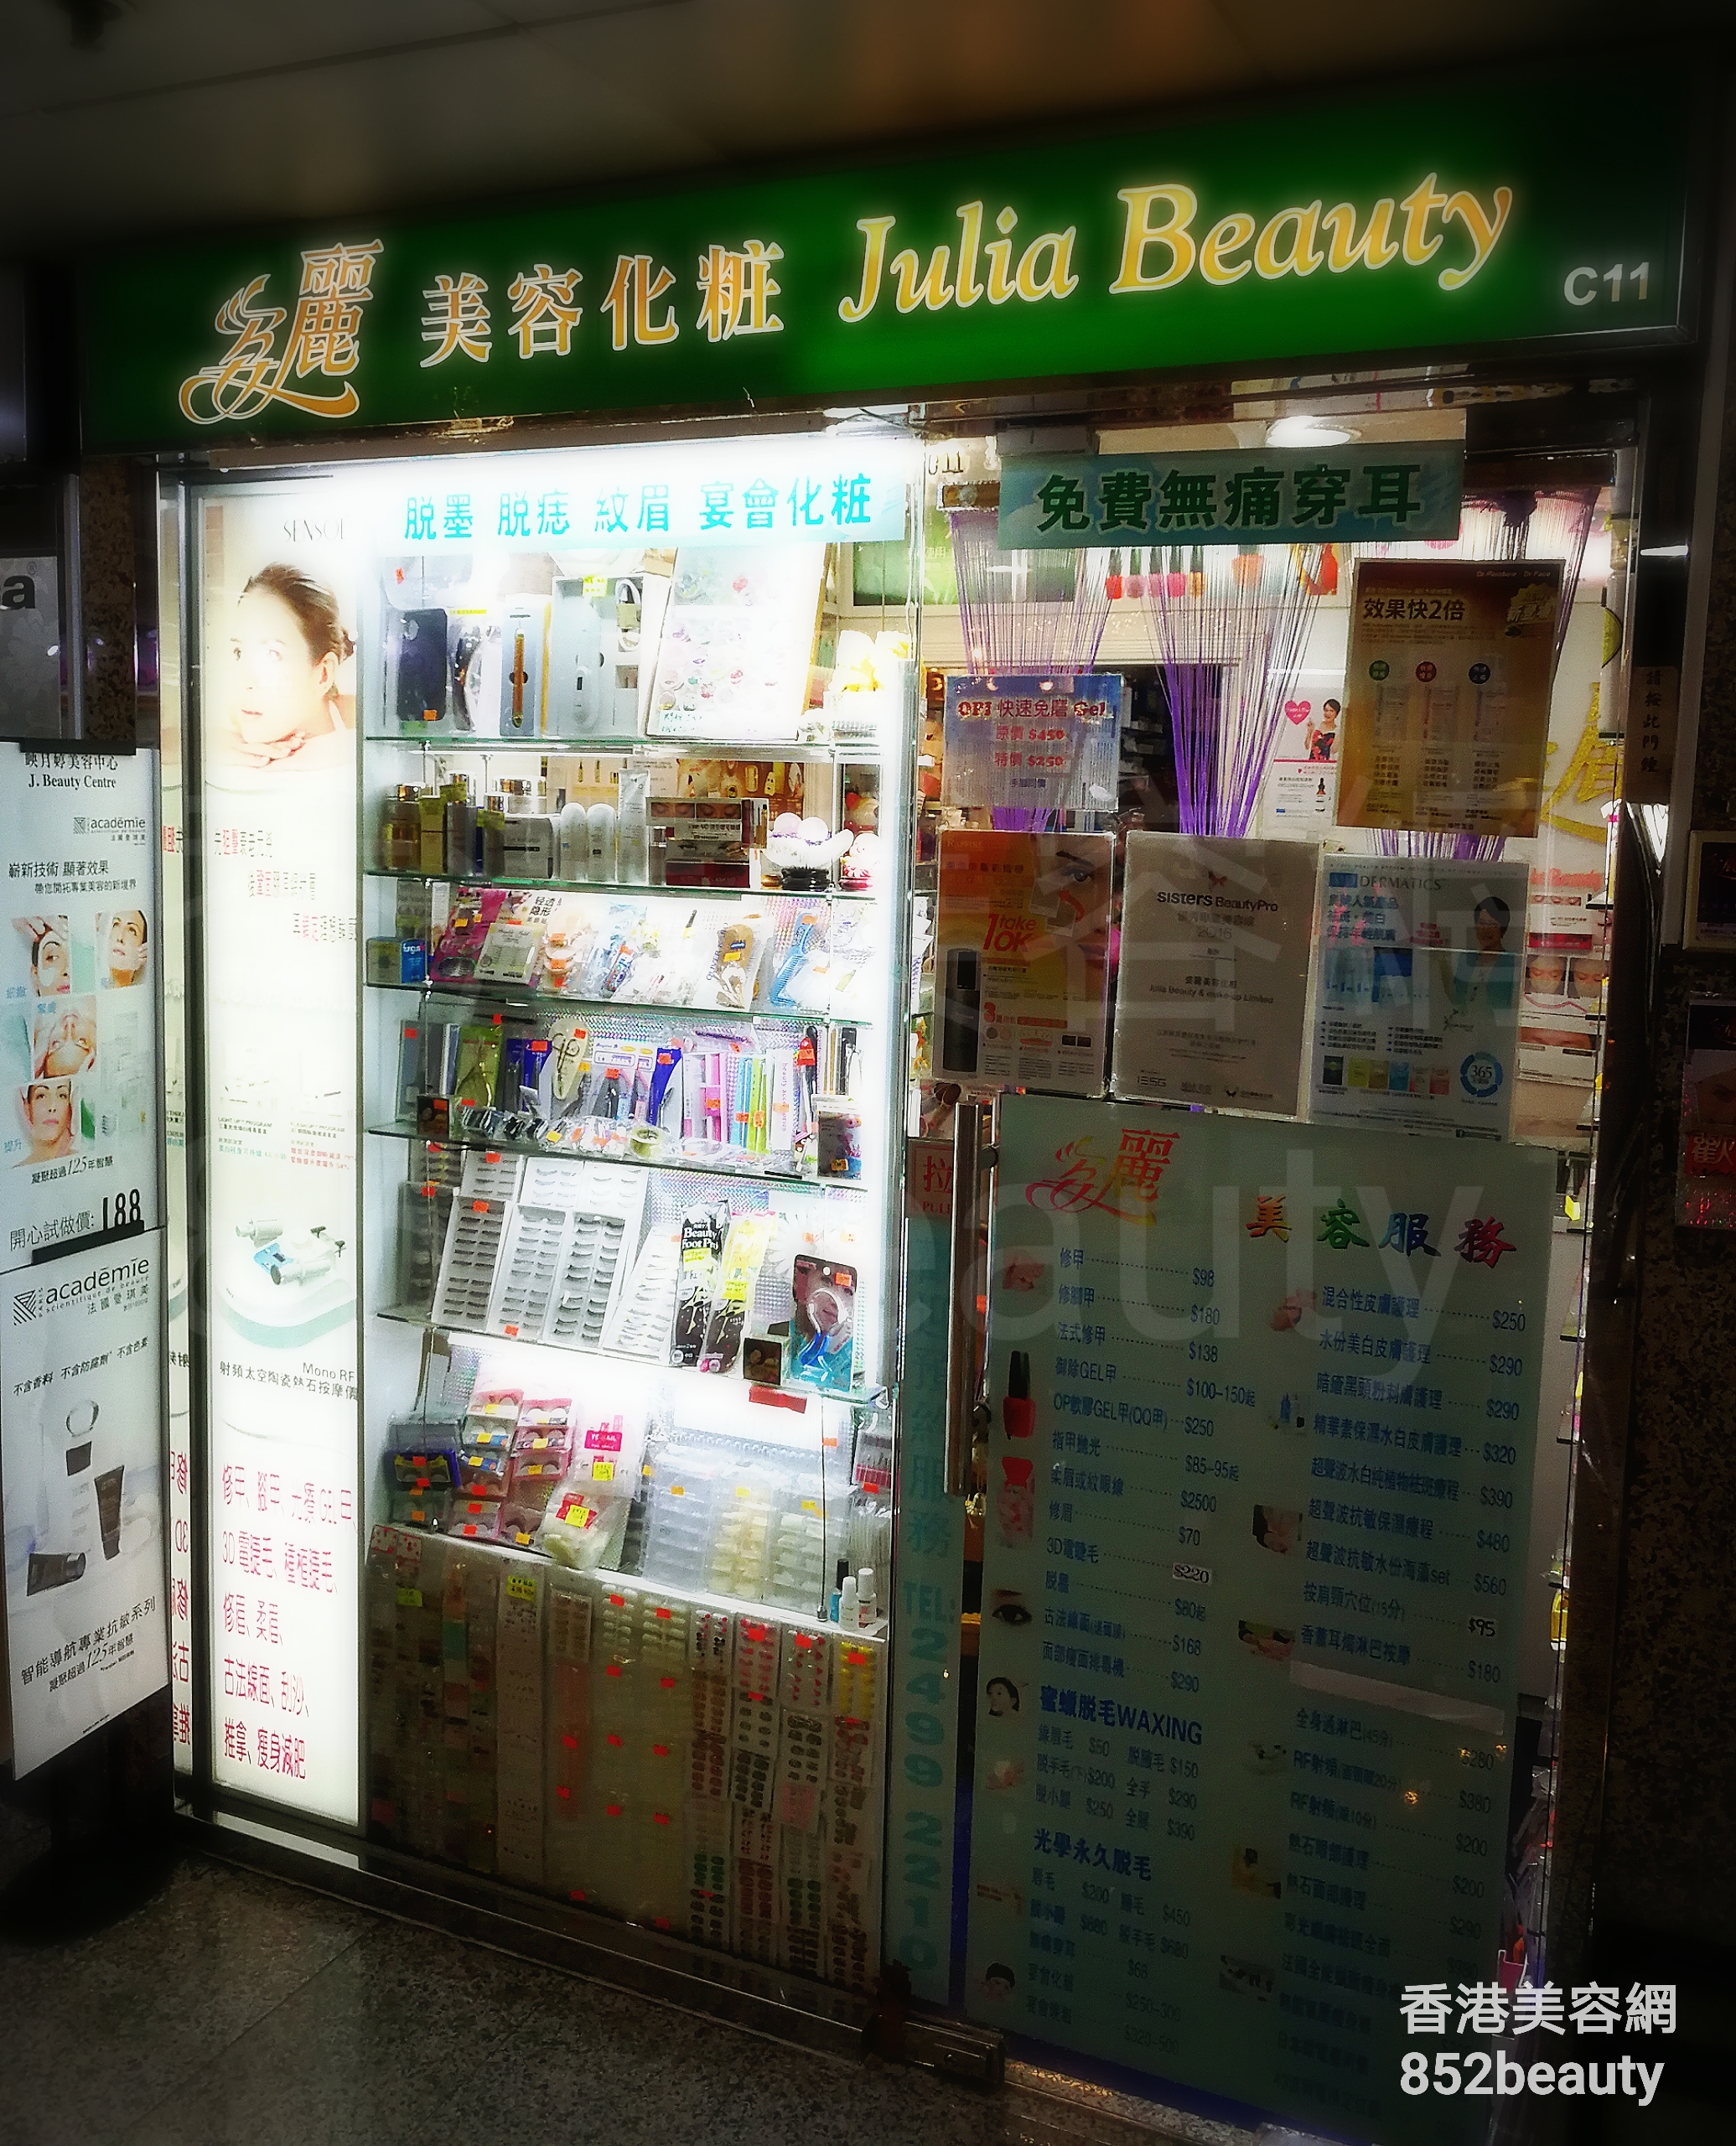 香港美容網 Hong Kong Beauty Salon 美容院 / 美容師: 姿麗美容化粧